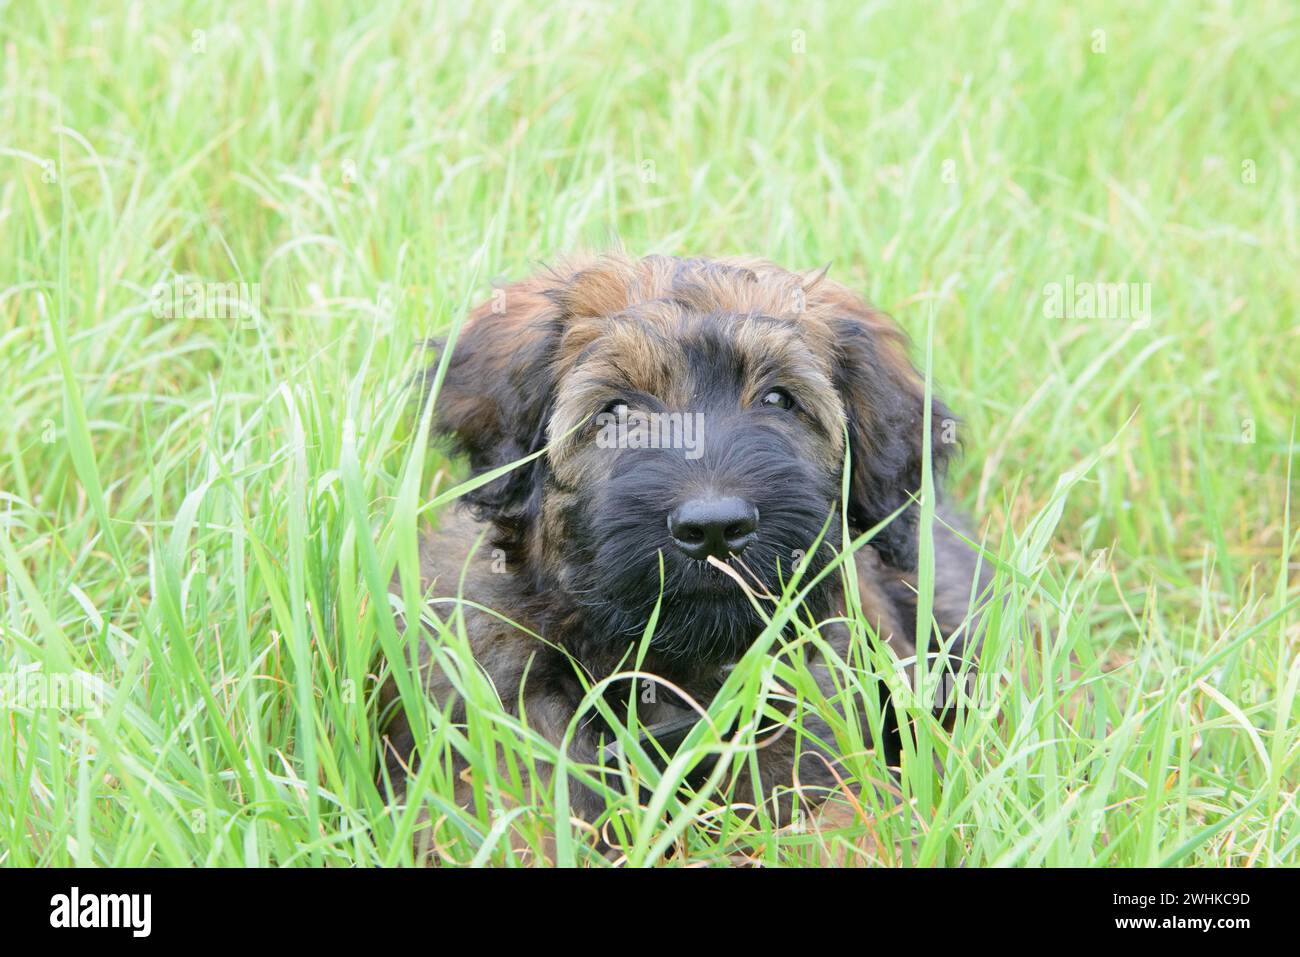 Ein verspielter Welpe versteckt sich im hohen Gras und sieht neugierig aus, Briard (Berger de Brie), Welpe, 8 Wochen alt Stockfoto